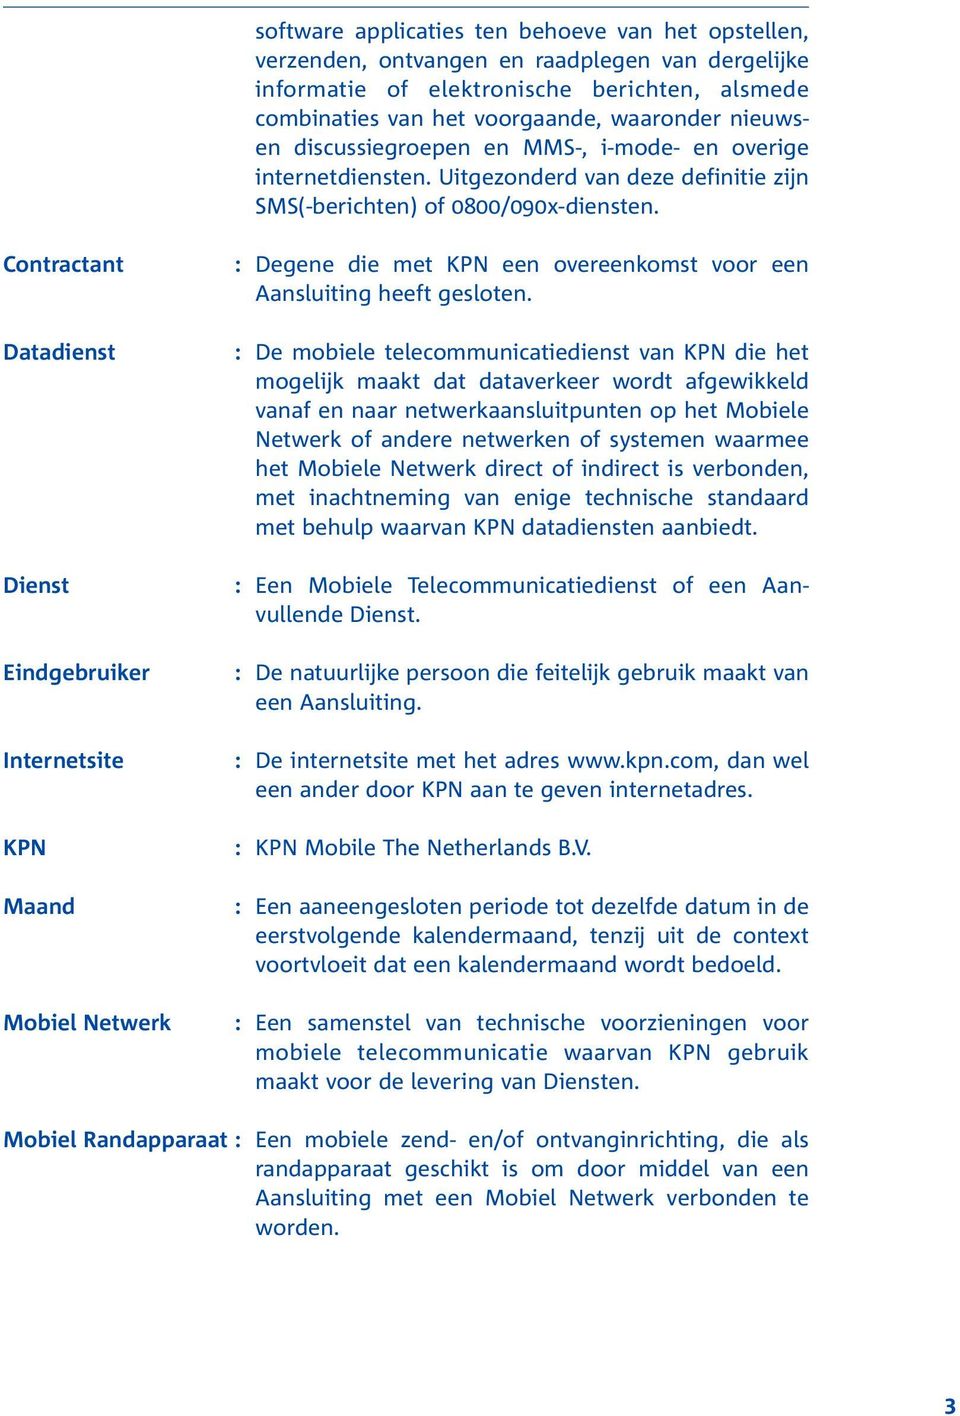 Contractant Datadienst Dienst Eindgebruiker Internetsite KPN Maand Mobiel Netwerk : Degene die met KPN een overeenkomst voor een Aansluiting heeft gesloten.